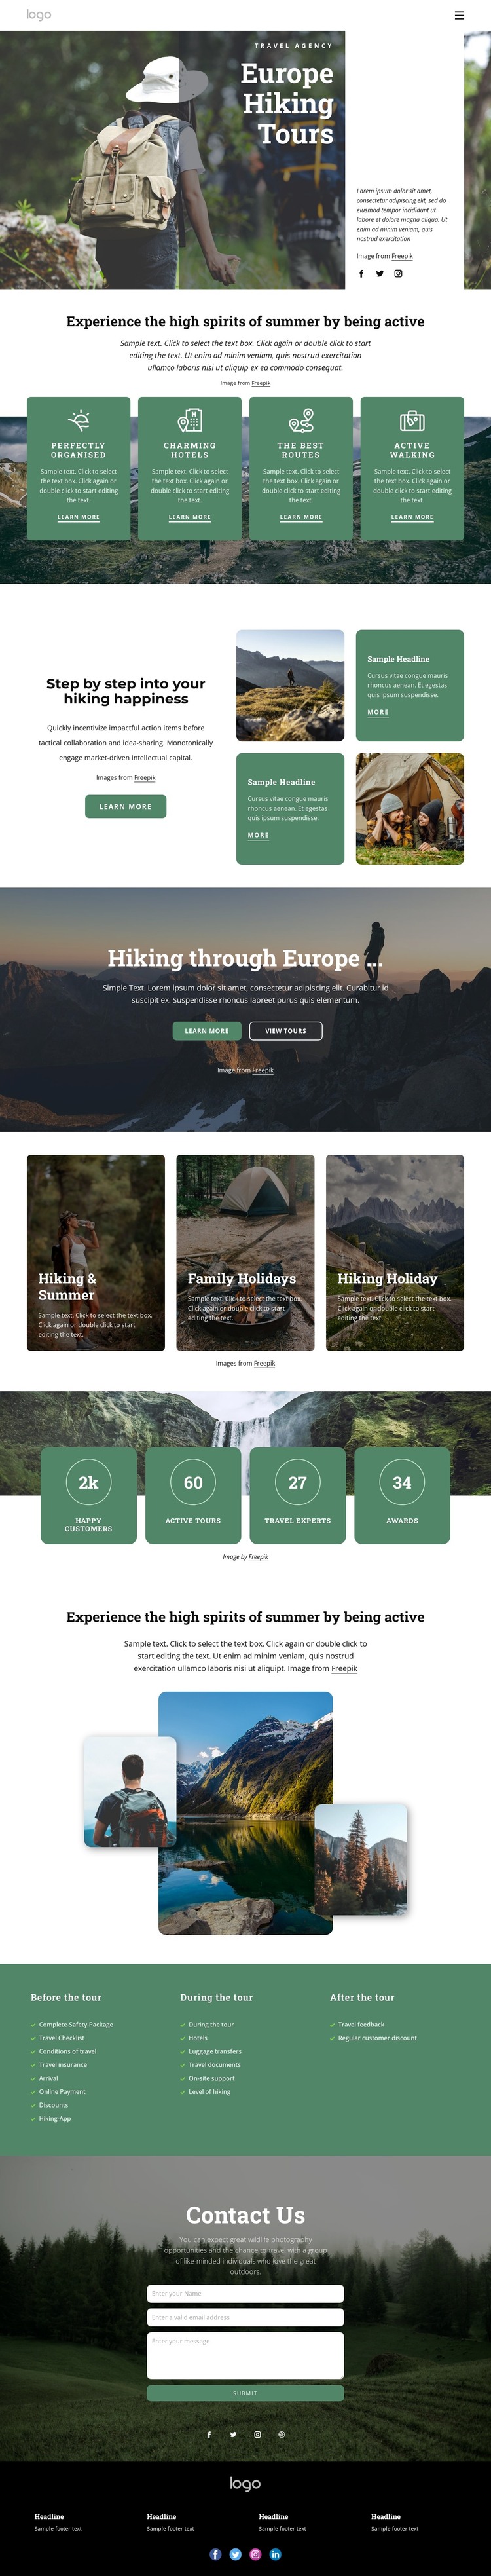 Hiking & trekking tours in Europe Web Design